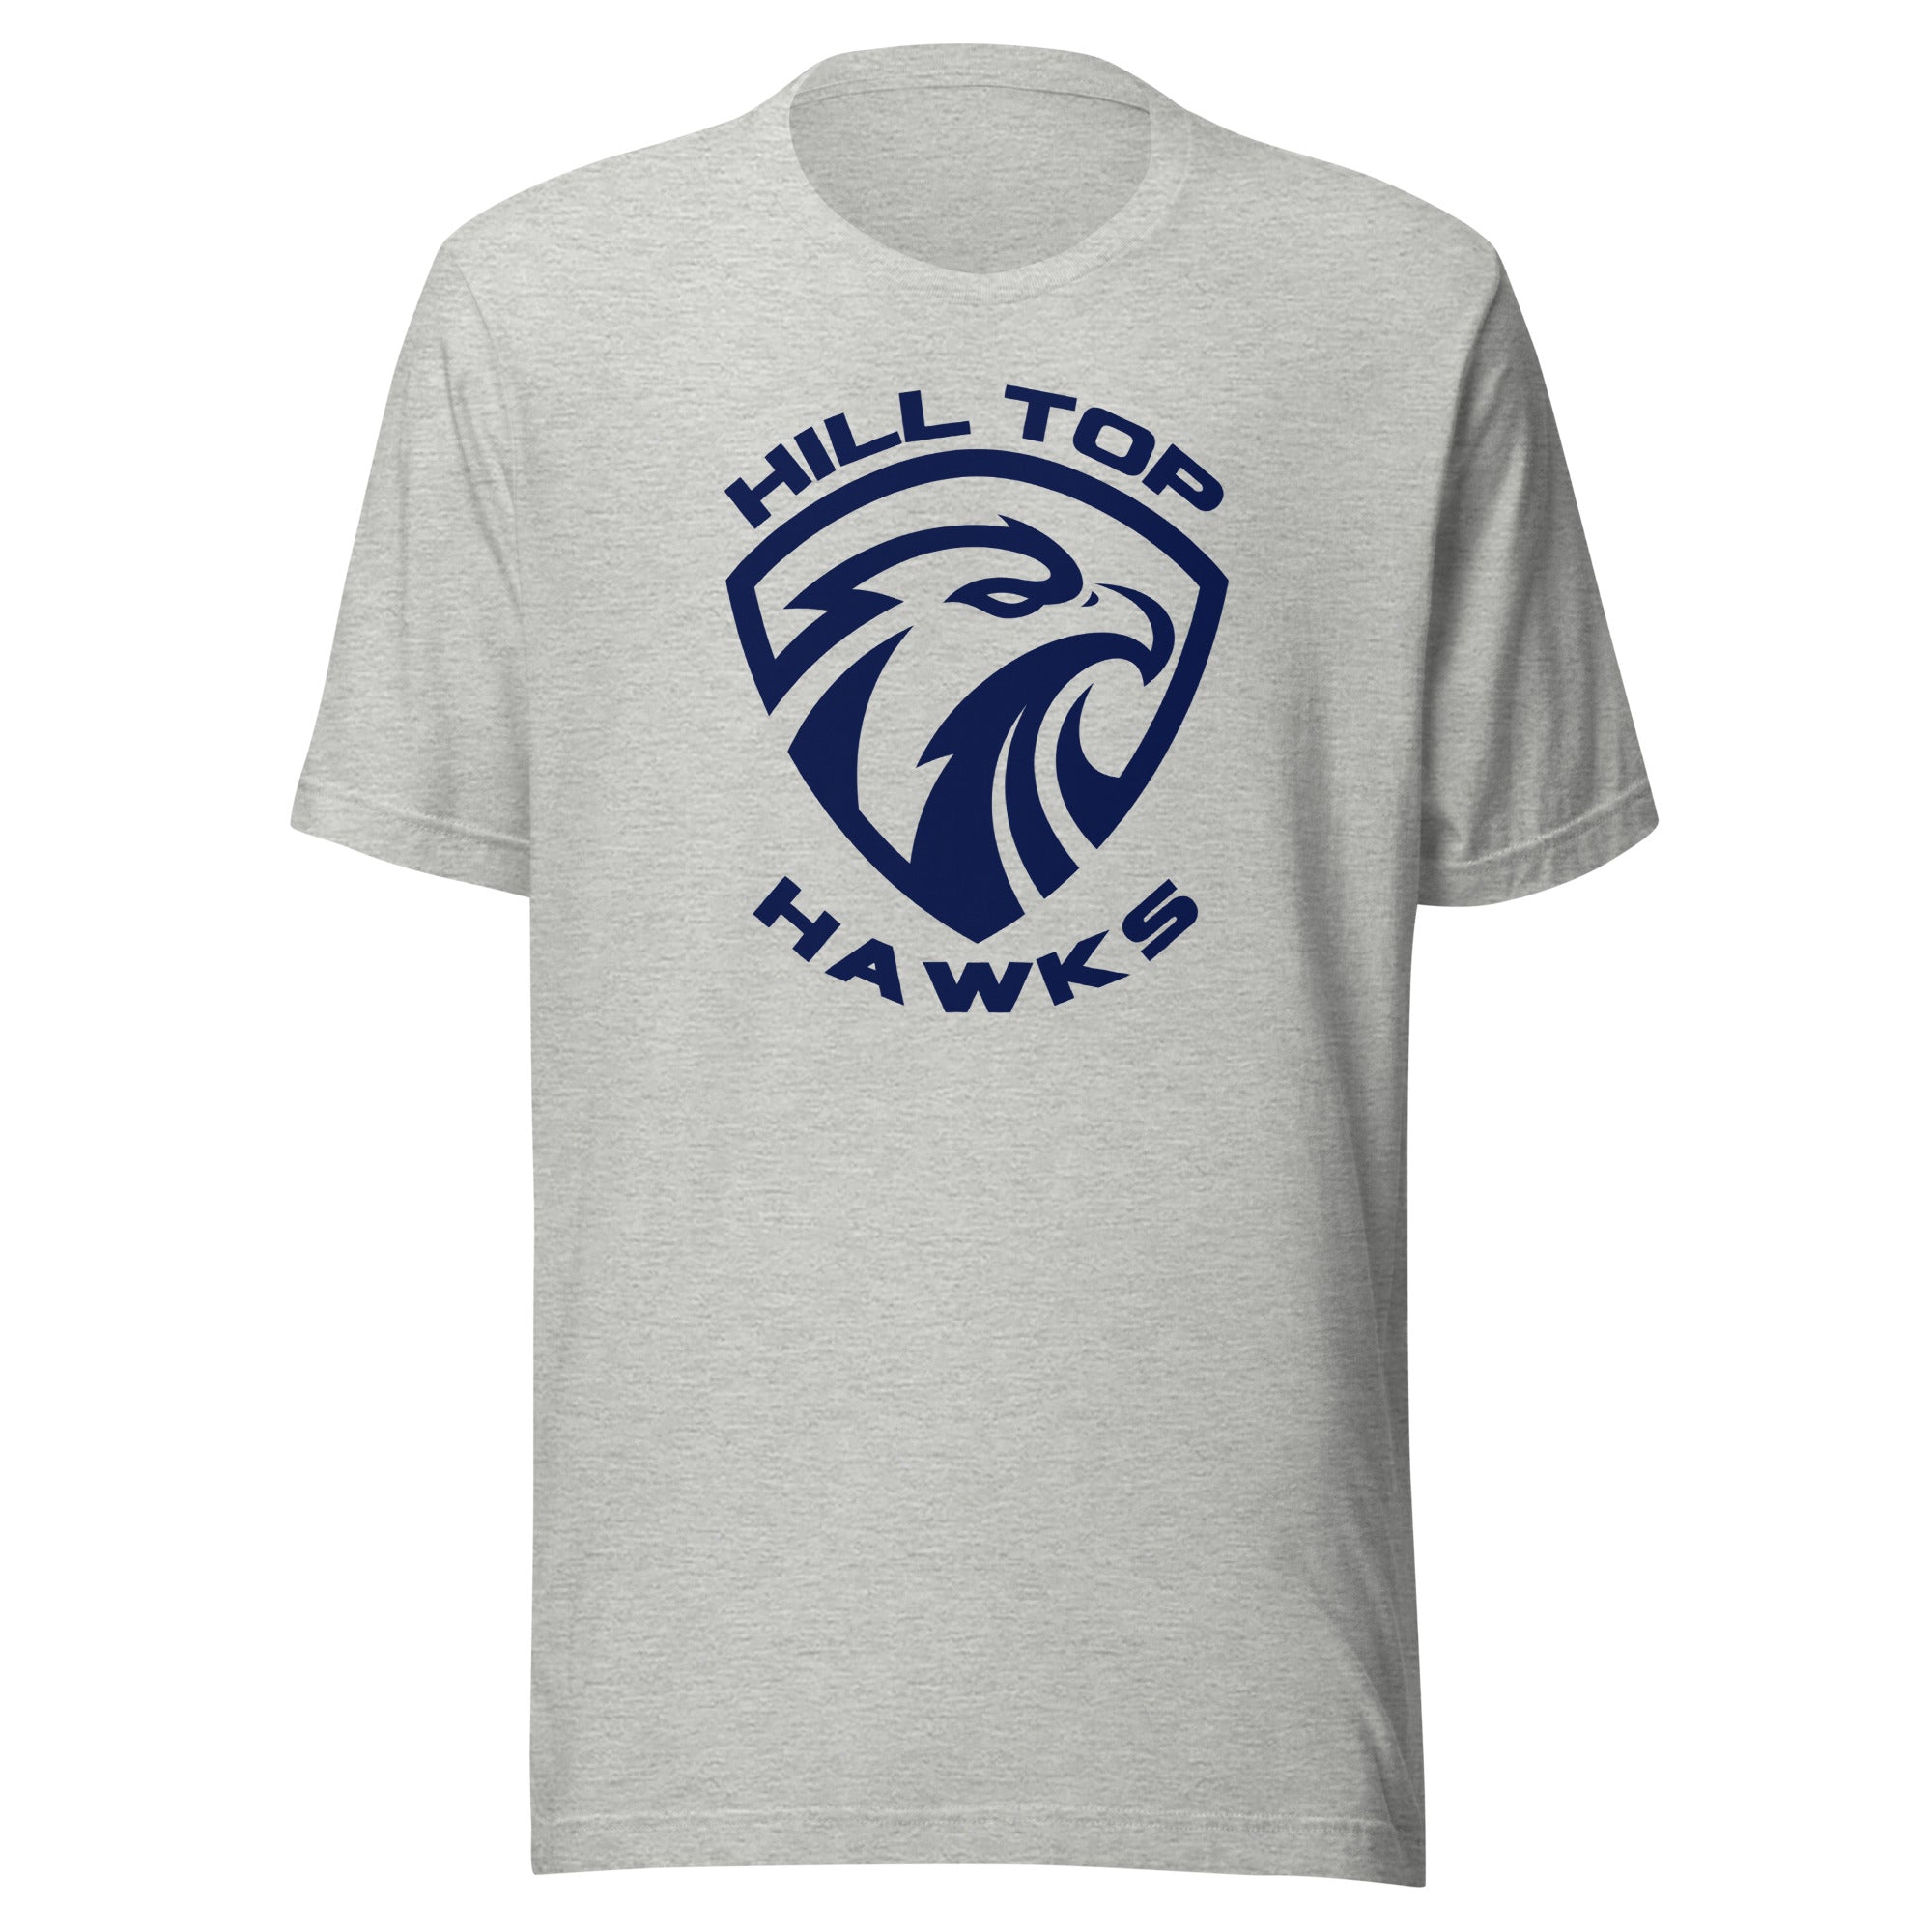 Hill Top T Shirt